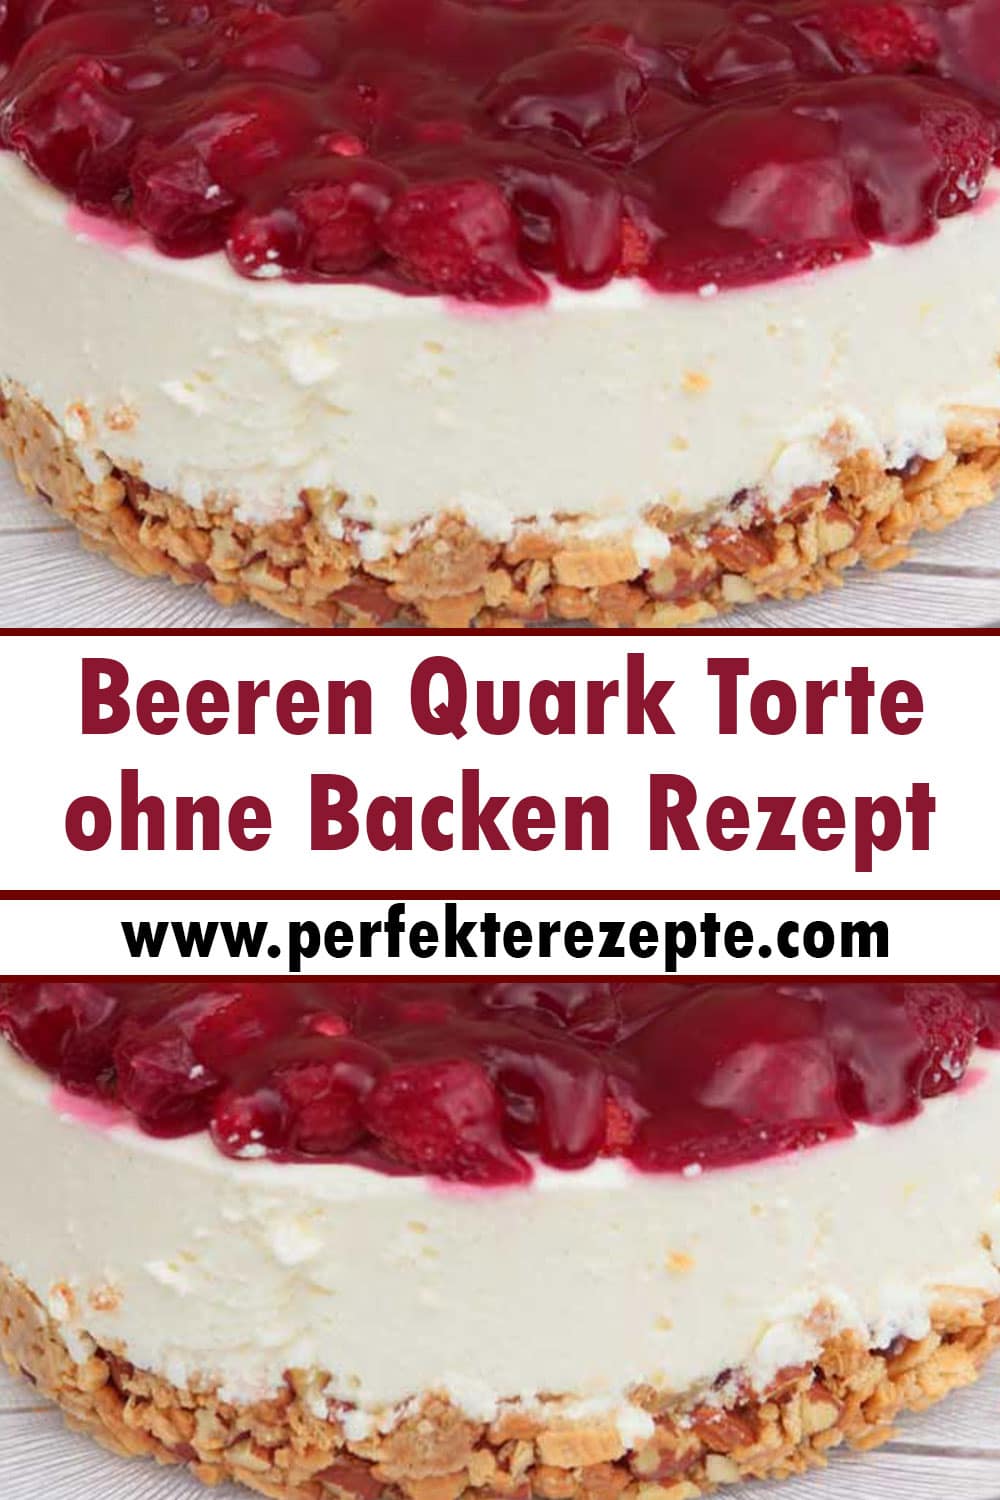 Beeren Quark Torte ohne Backen Rezept